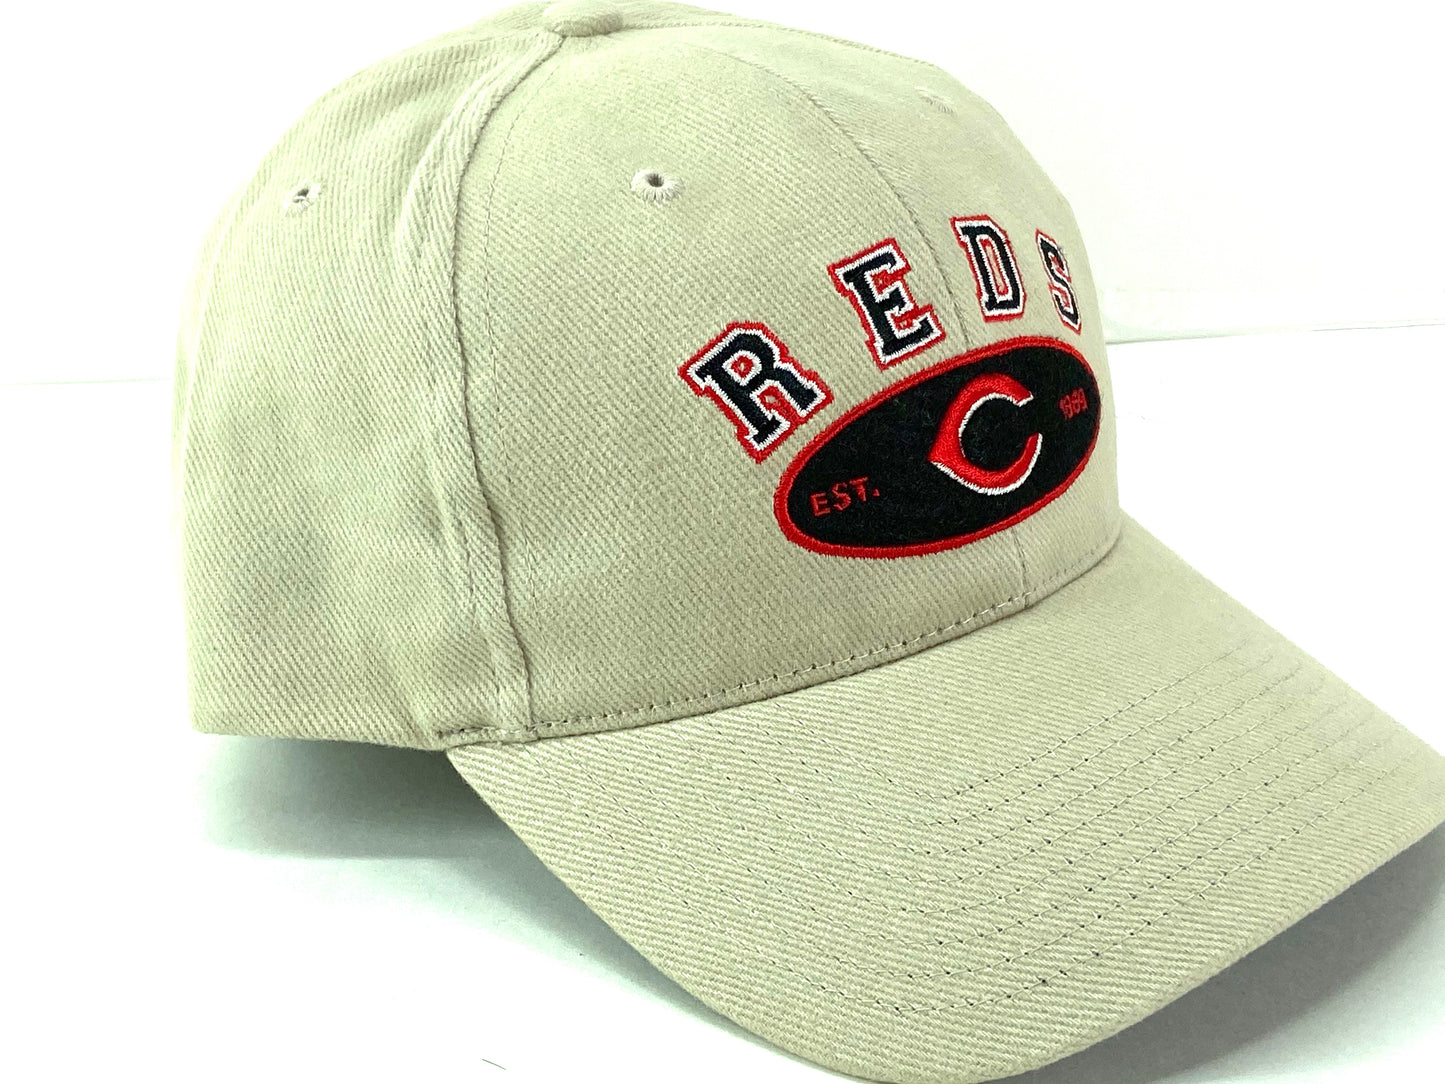 Cincinnati Reds Vintage MLB Khaki "EST 1869" Cap By Twins Enterprise